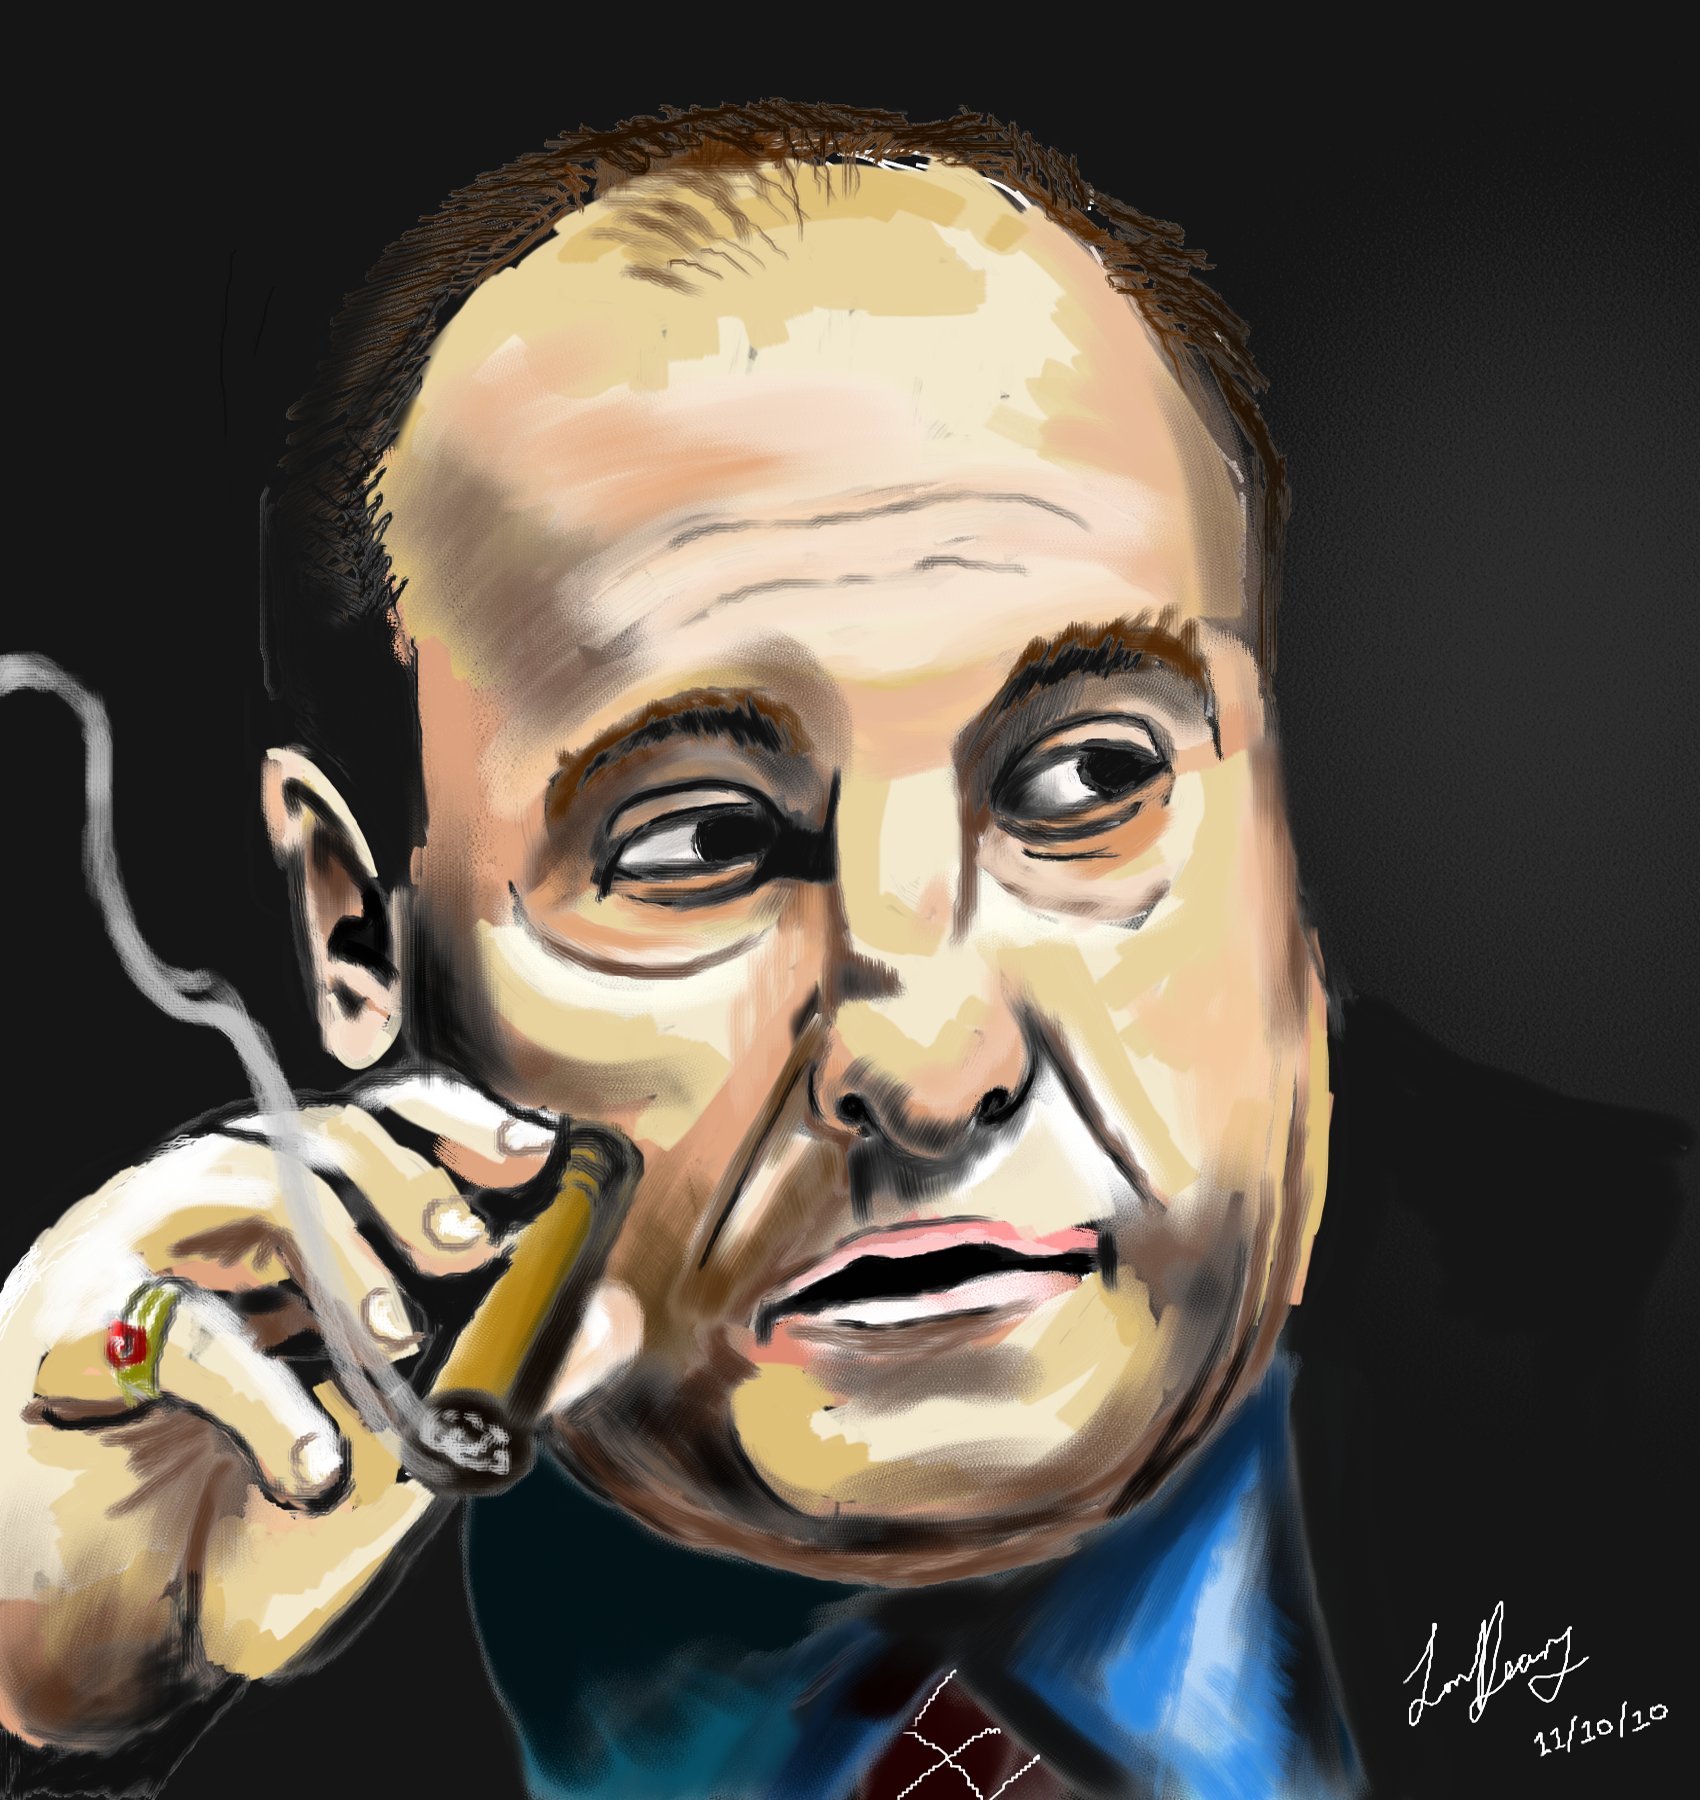 Tony Soprano Painting - Italian Mafia Painting , HD Wallpaper & Backgrounds